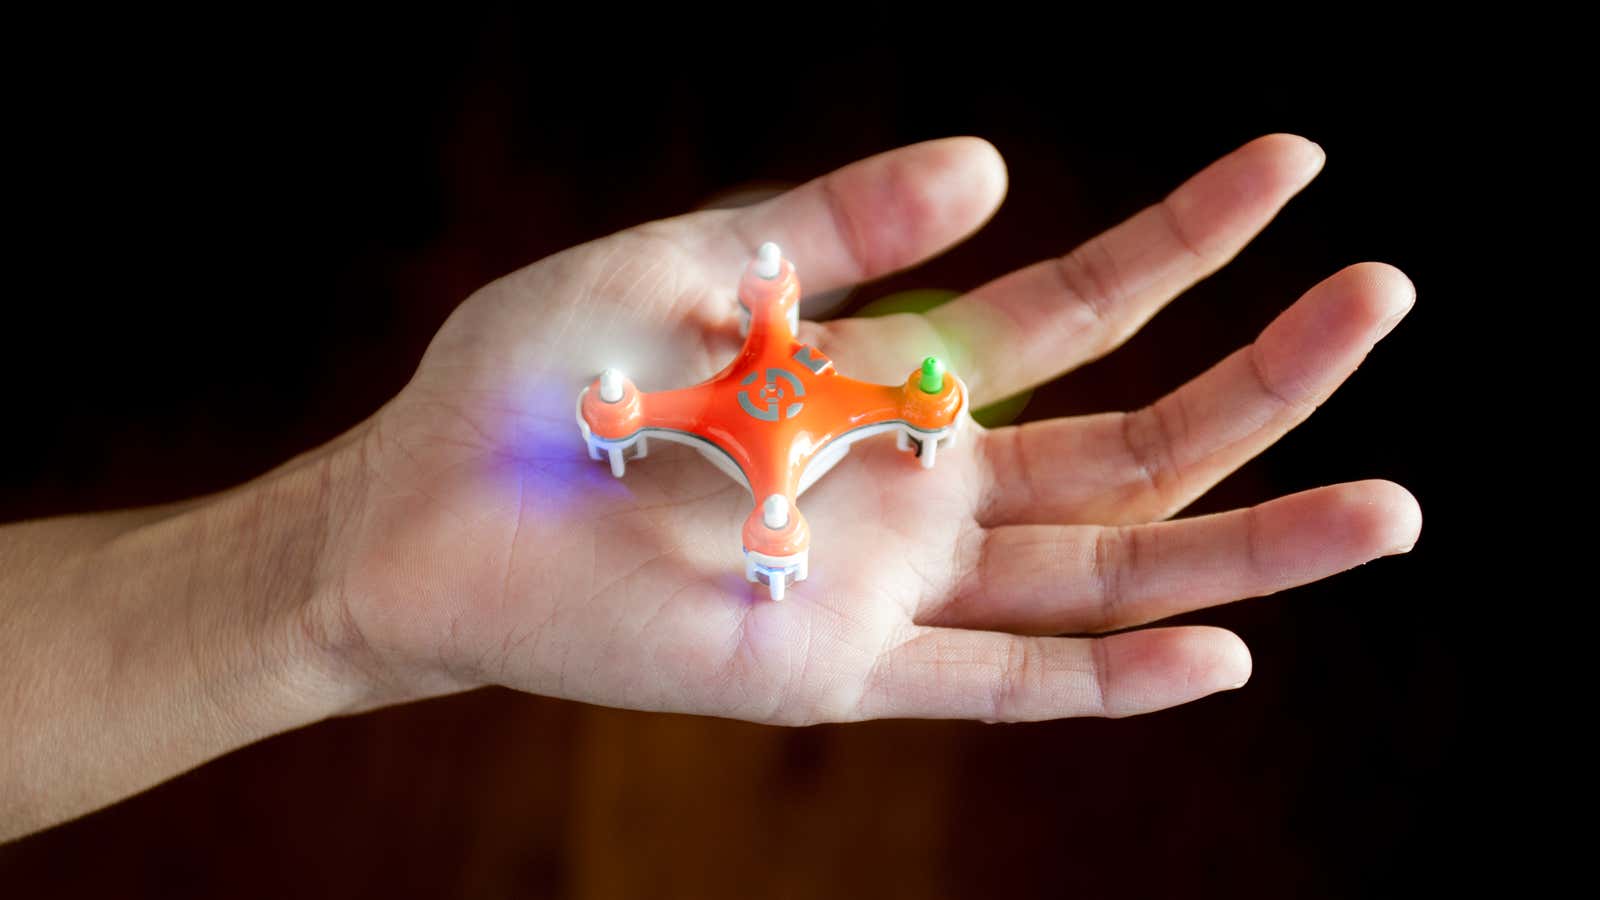 A surprisingly cute drone.